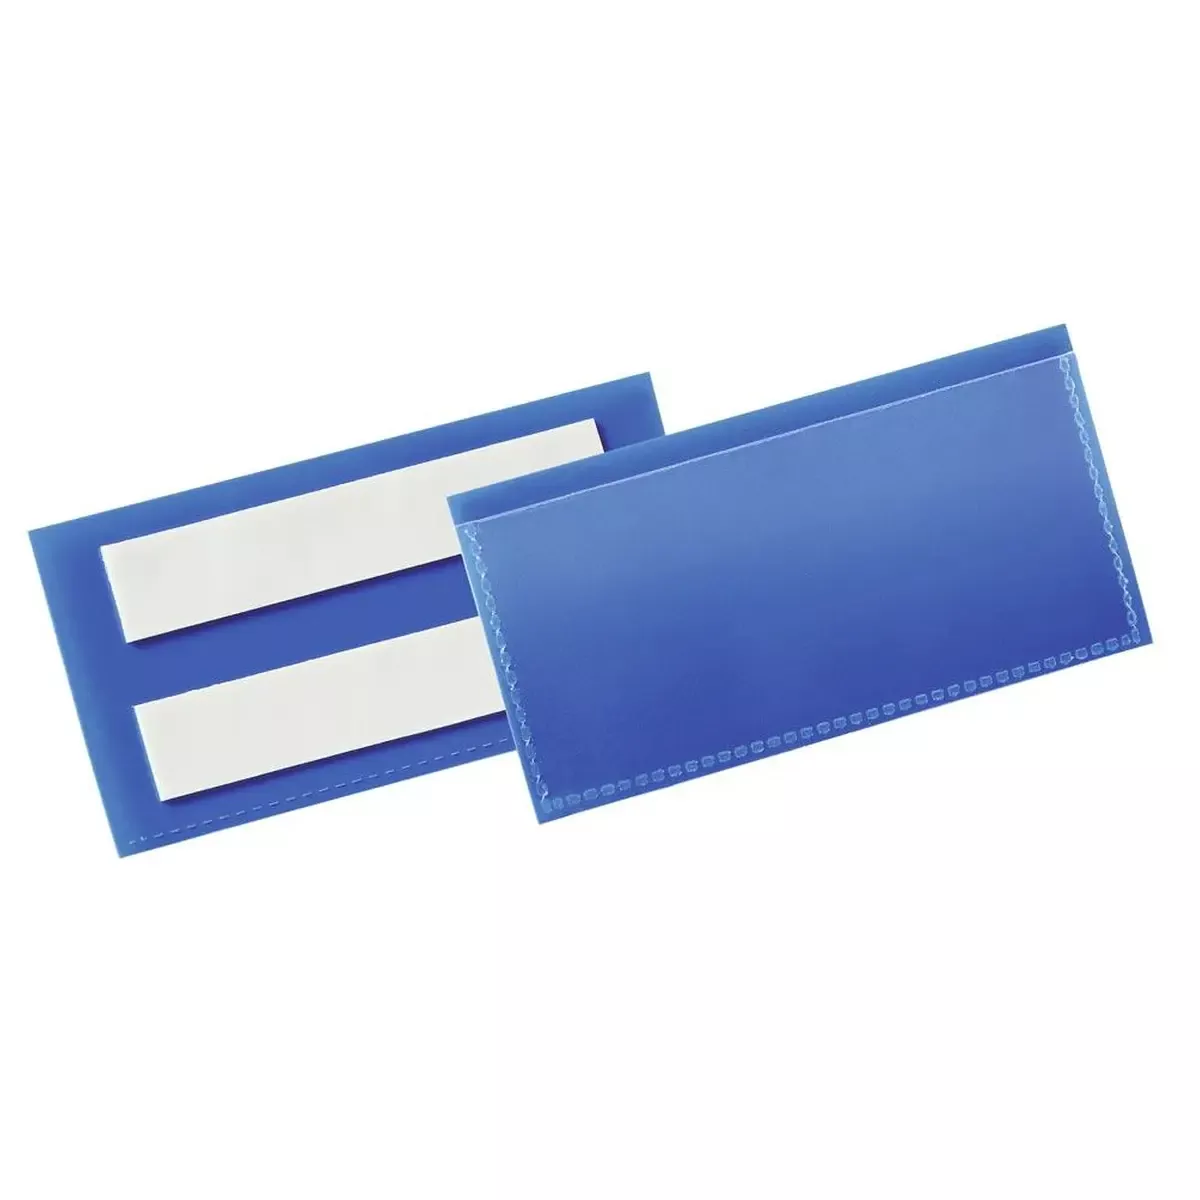 Regale Selbstklebende Kennzeichnungstasche, BxH innen 100x38 mm, Farbe dunkelblau, VE 50 Stück für Lager